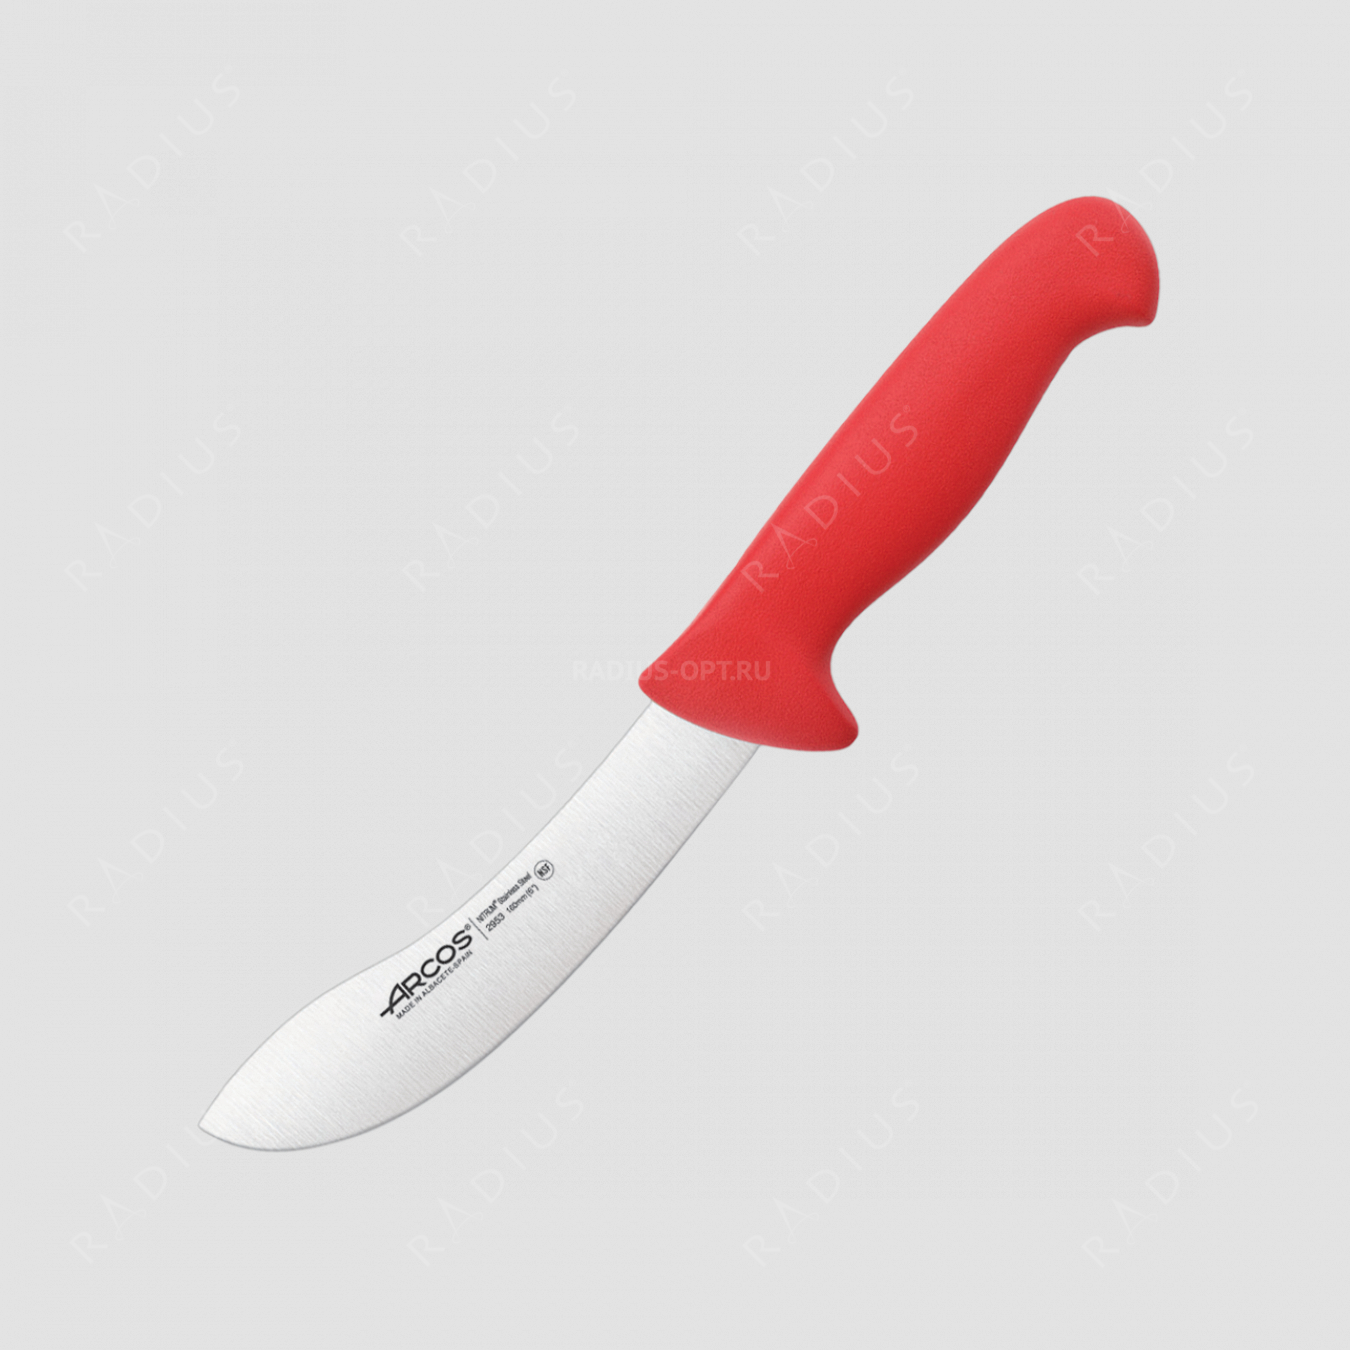 Нож кухонный для разделки 16 см, рукоять - красная, серия 2900, ARCOS, Испания